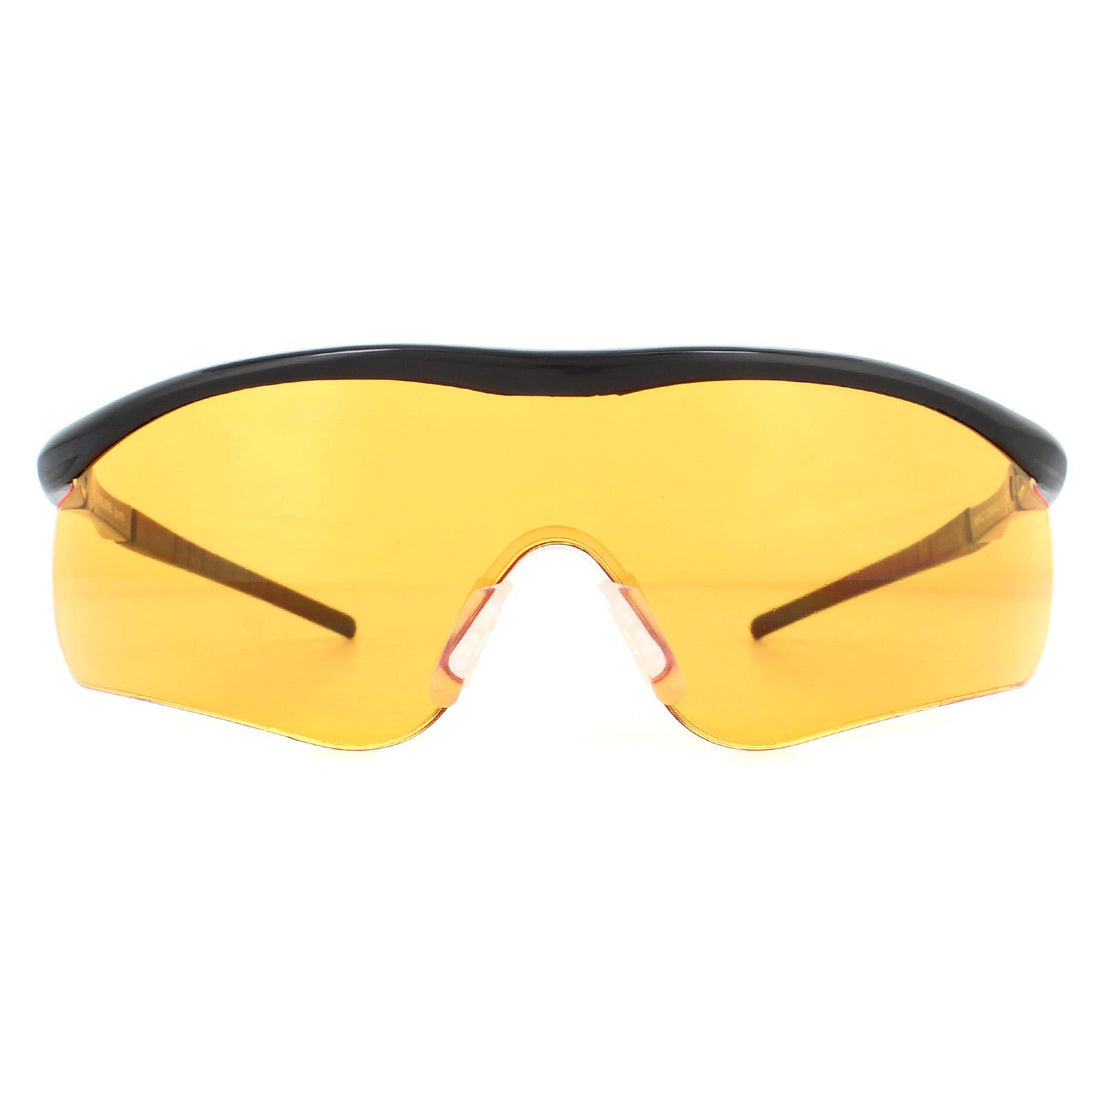 Eyelevel Impact Shooting Safety Glasses Sunglasses Black Orange Shatterproof